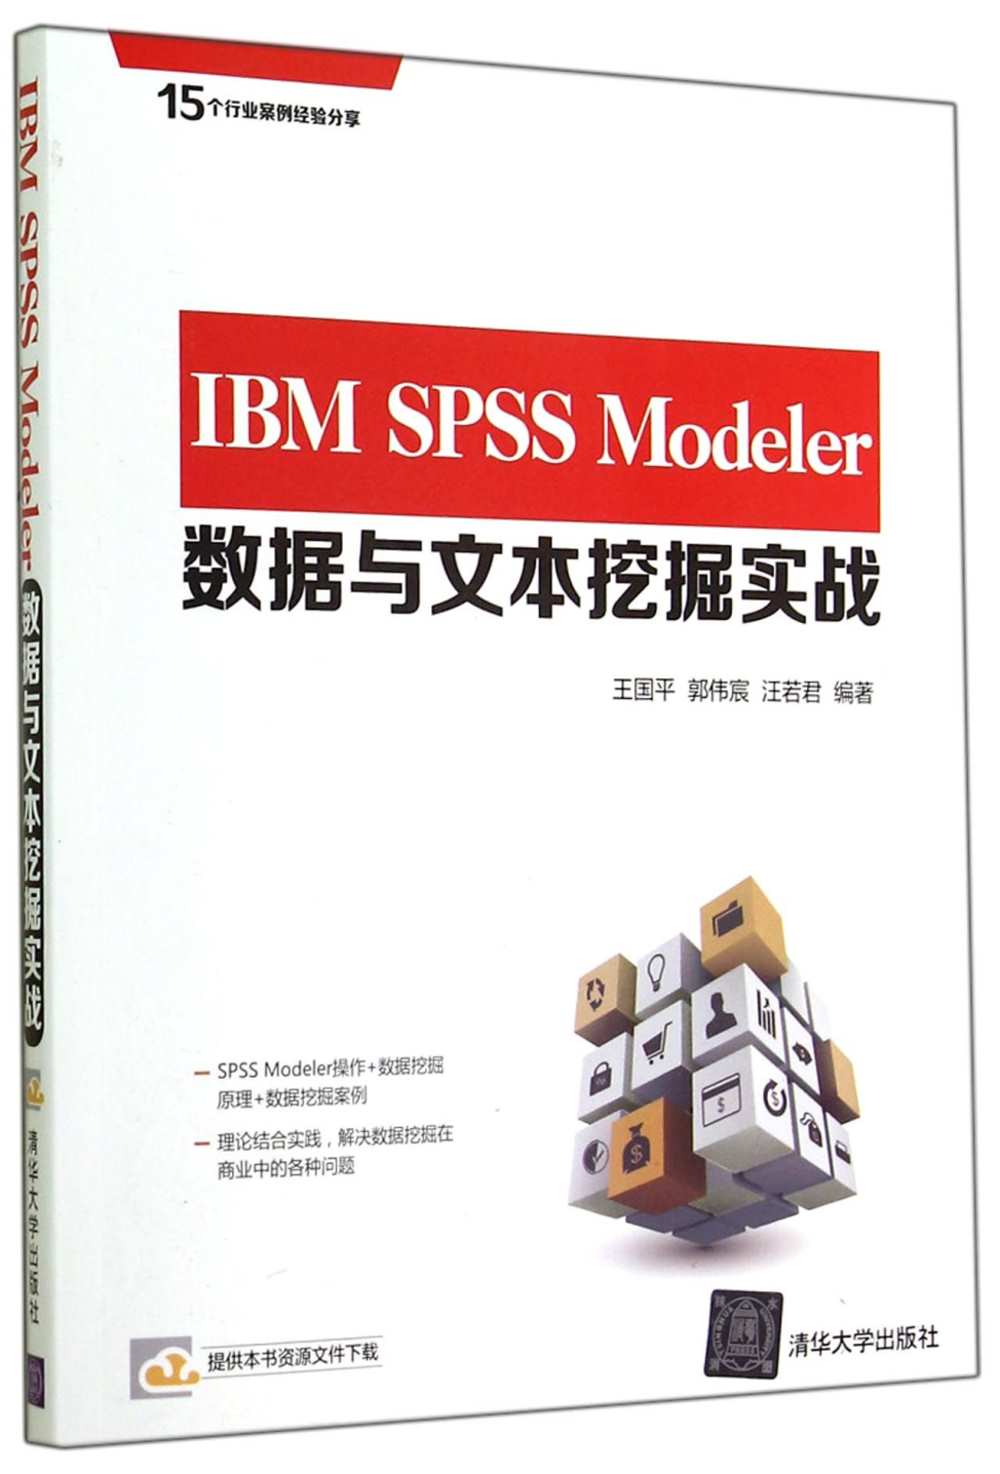 IBM SPSS Modeler數據與文本挖掘實戰